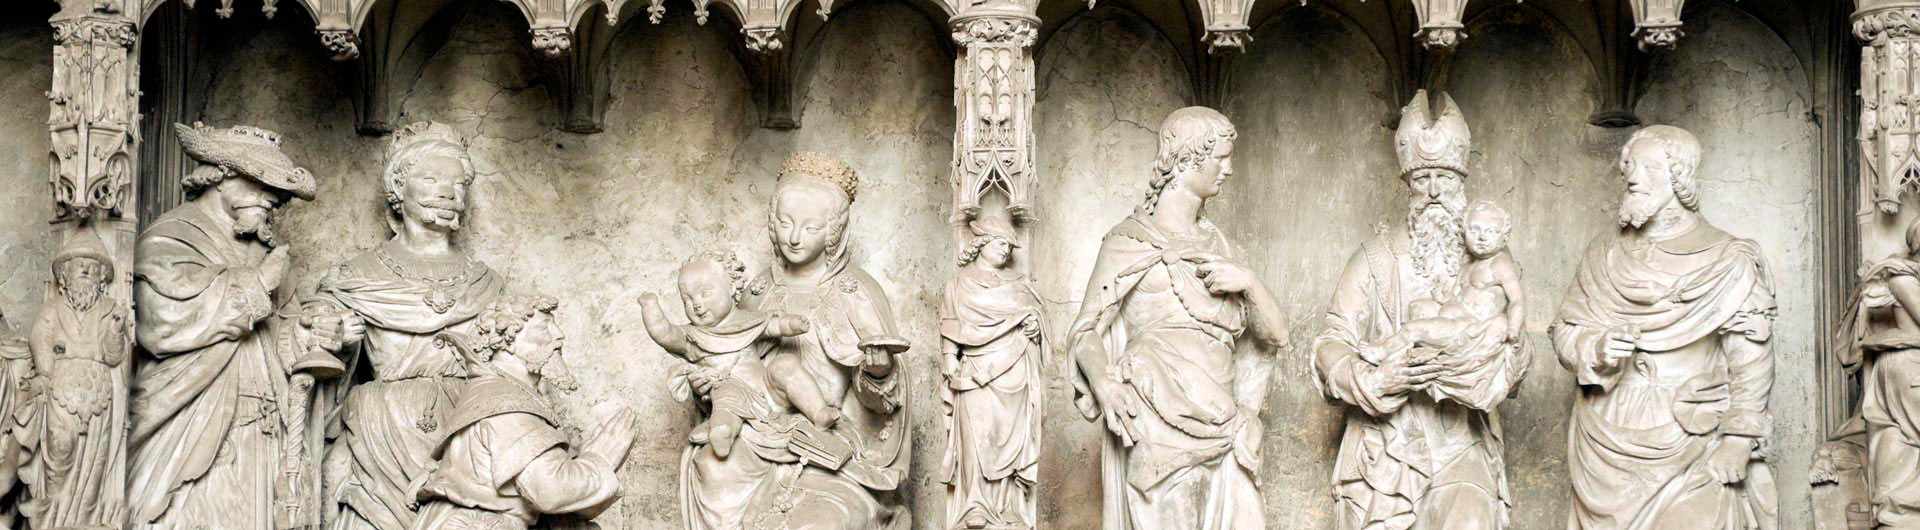 Bas relief gothique